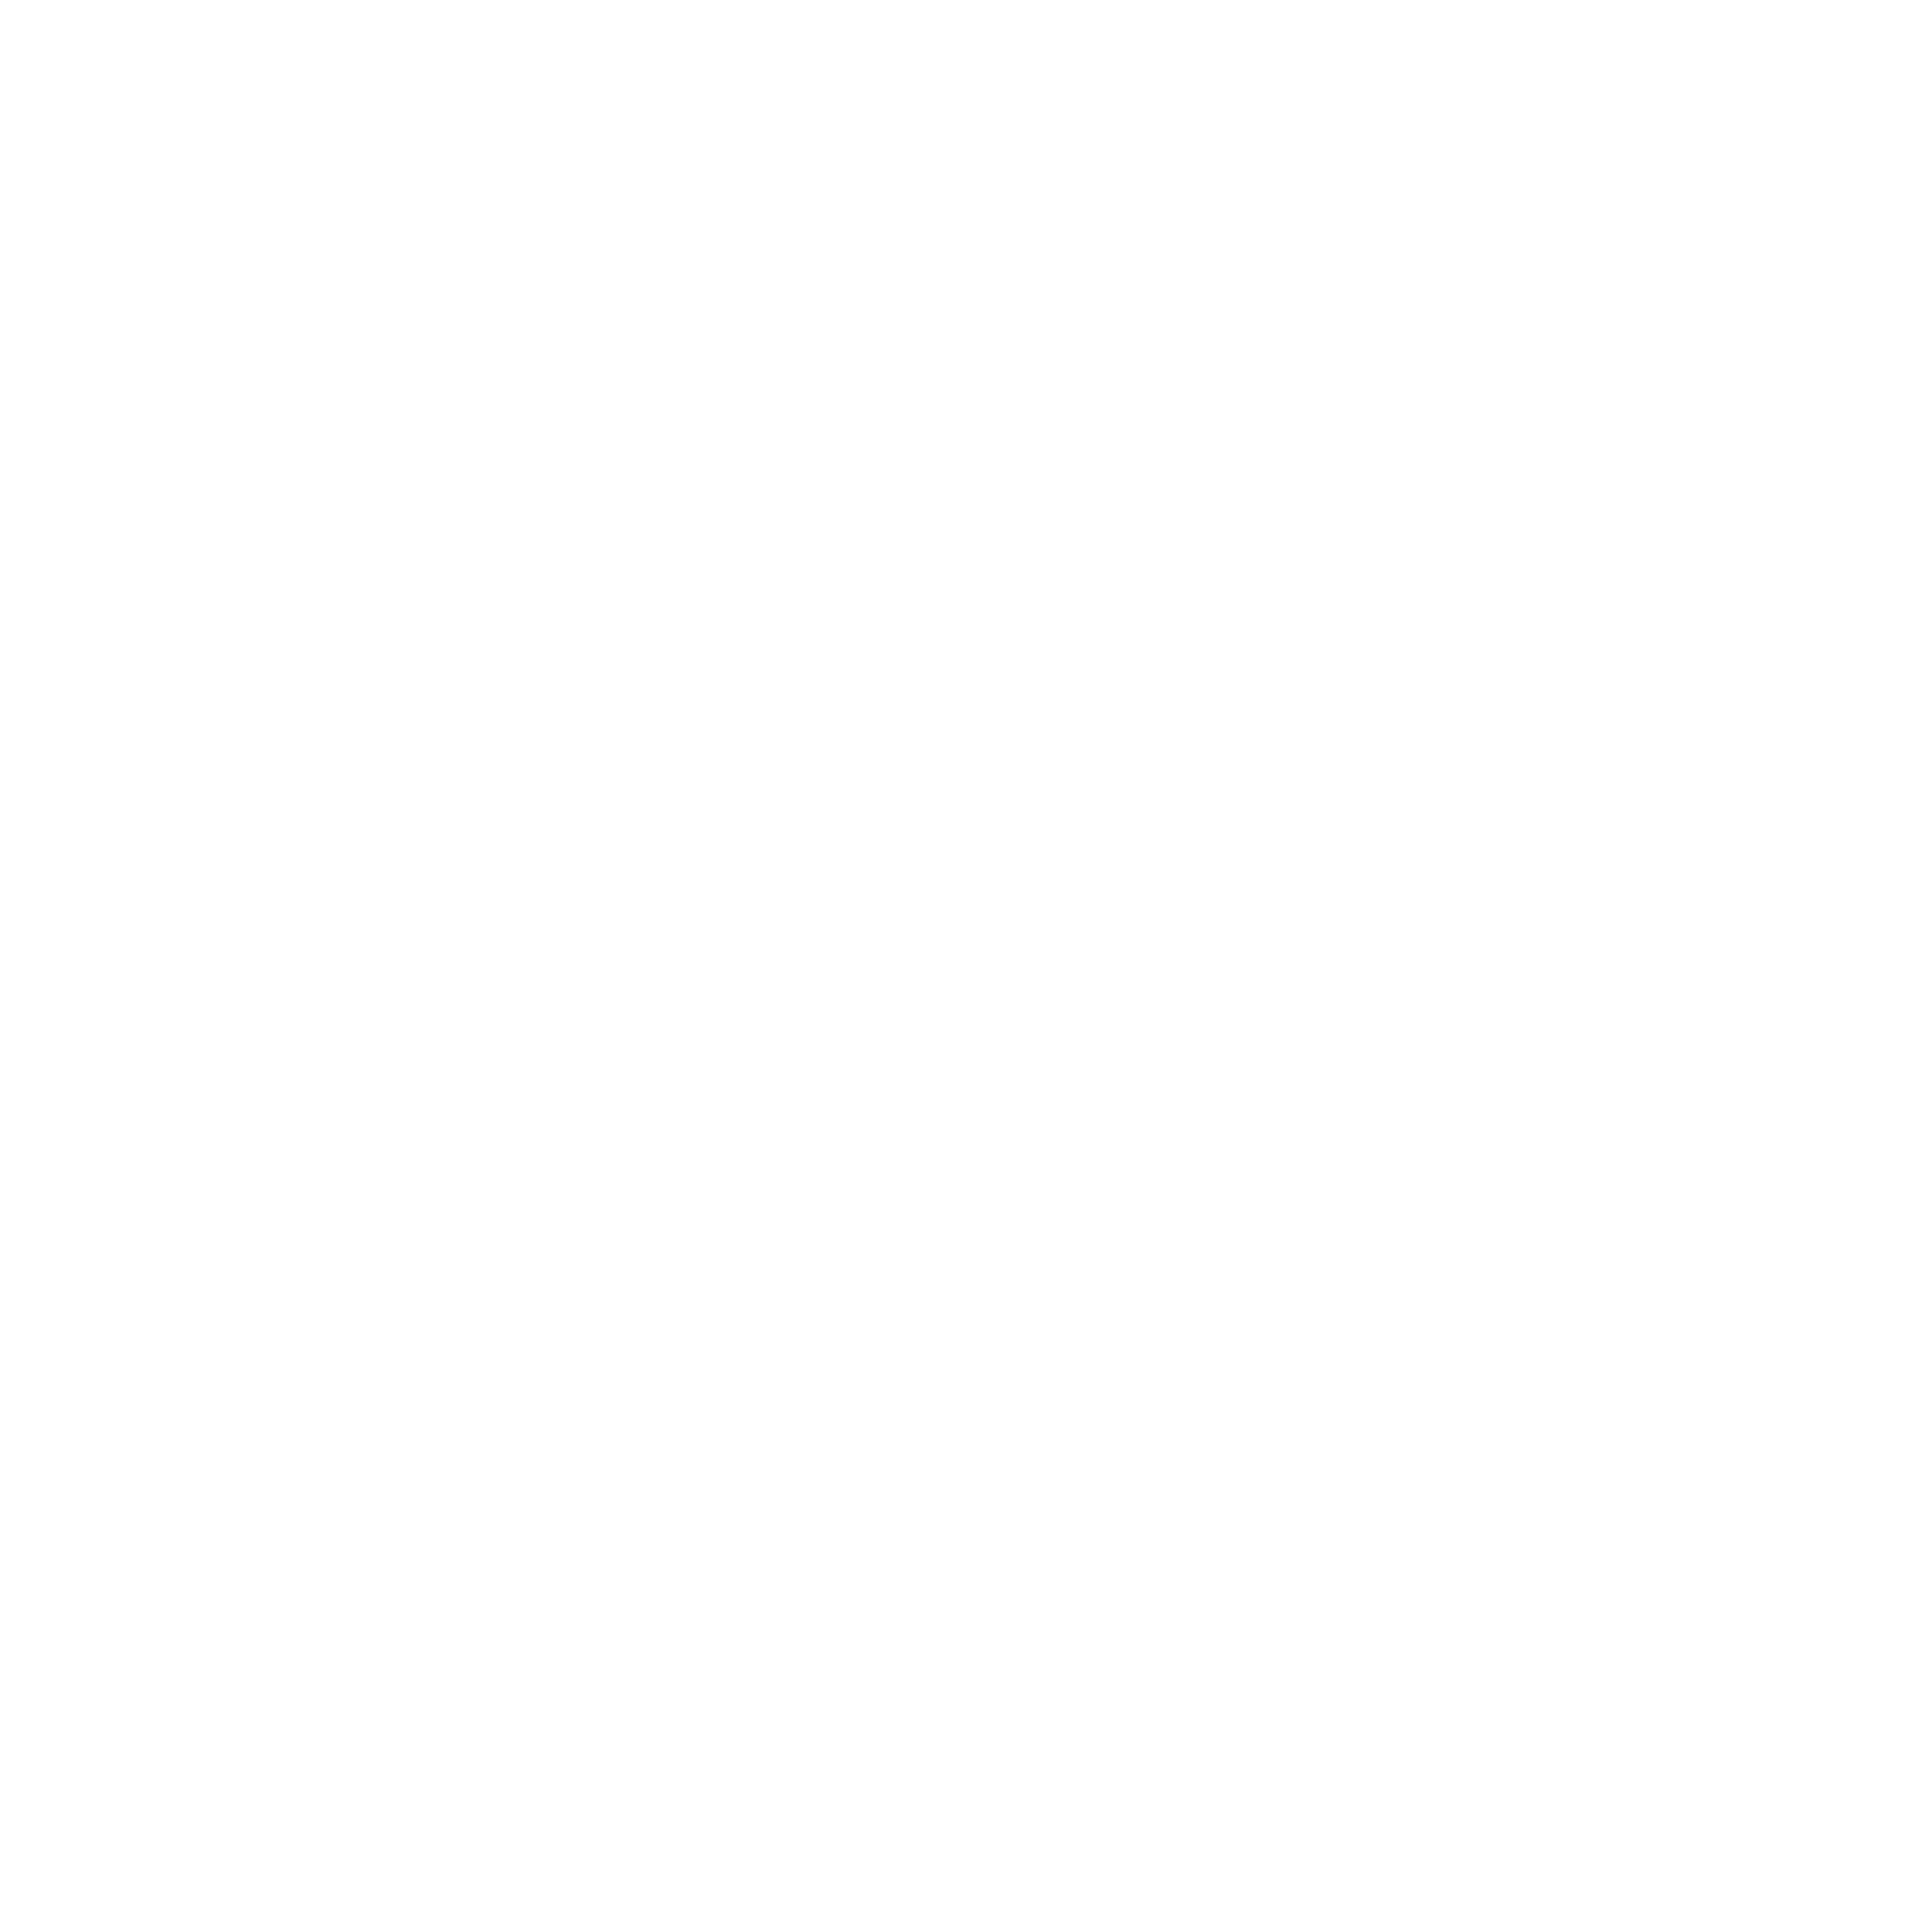 Daryl Grob